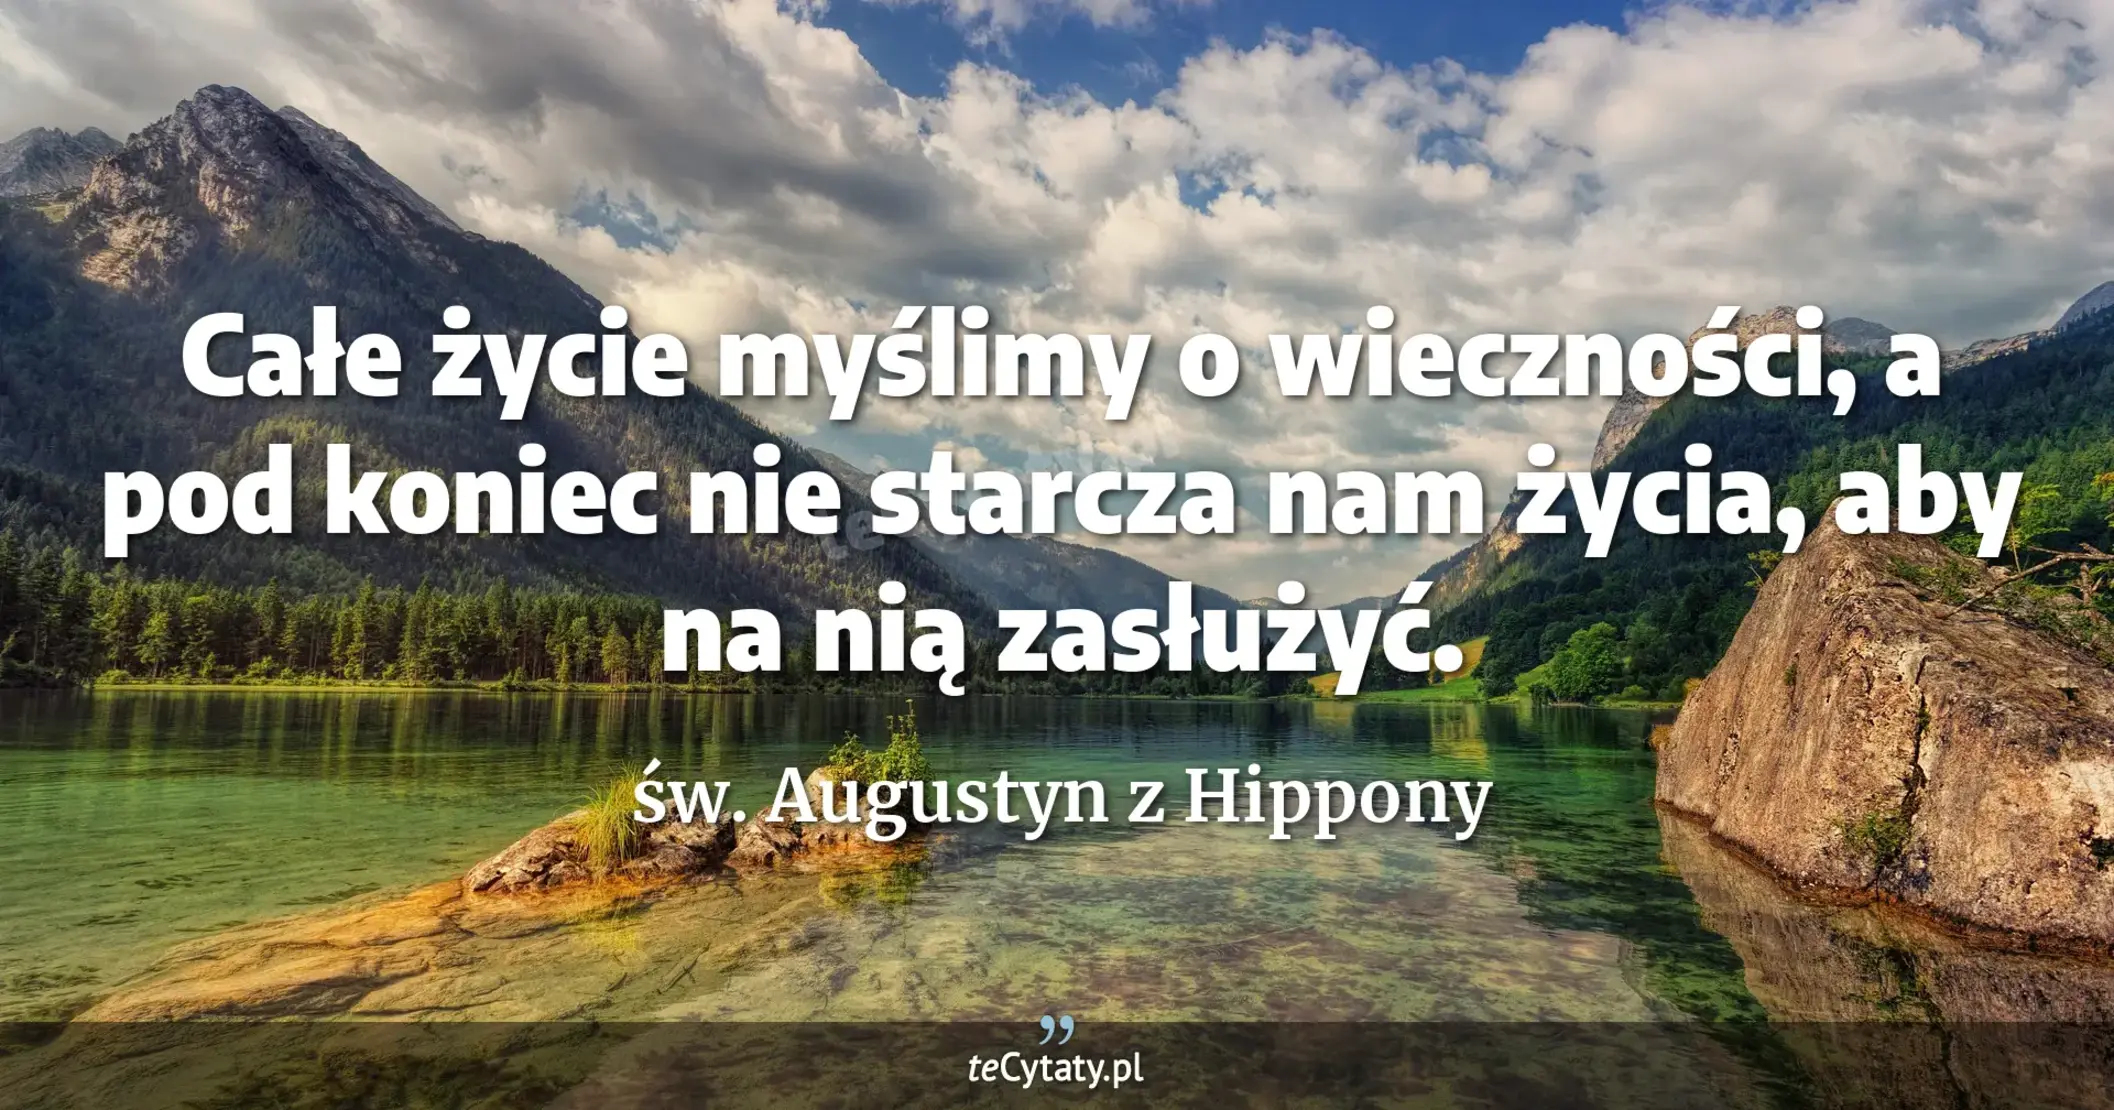 Całe życie myślimy o wieczności, a pod koniec nie starcza nam życia, aby na nią zasłużyć. - św. Augustyn z Hippony